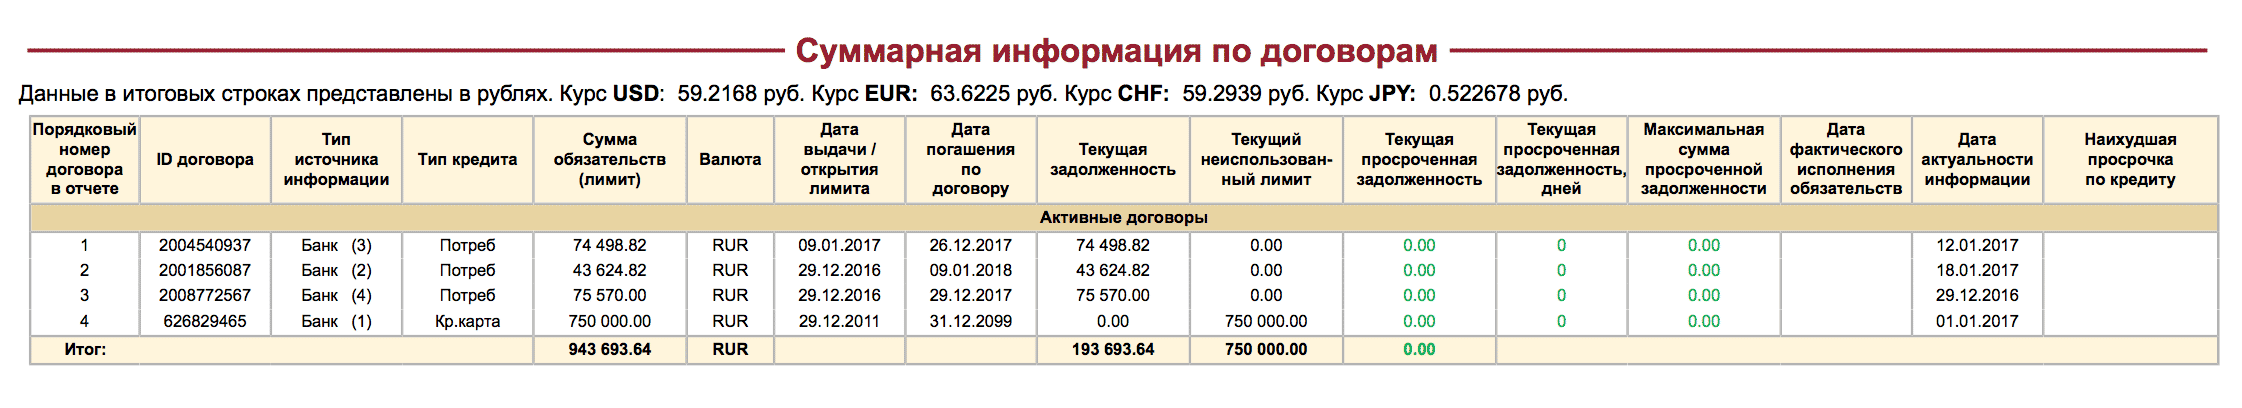 Кредит в микрофинансовой организации по моему паспорту но rus